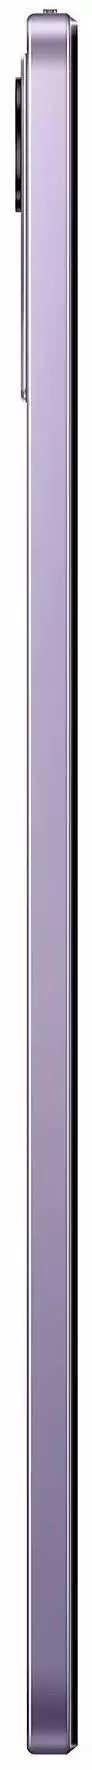 Планшет Xiaomi Redmi Pad SE 8/256GB, фиолетовый